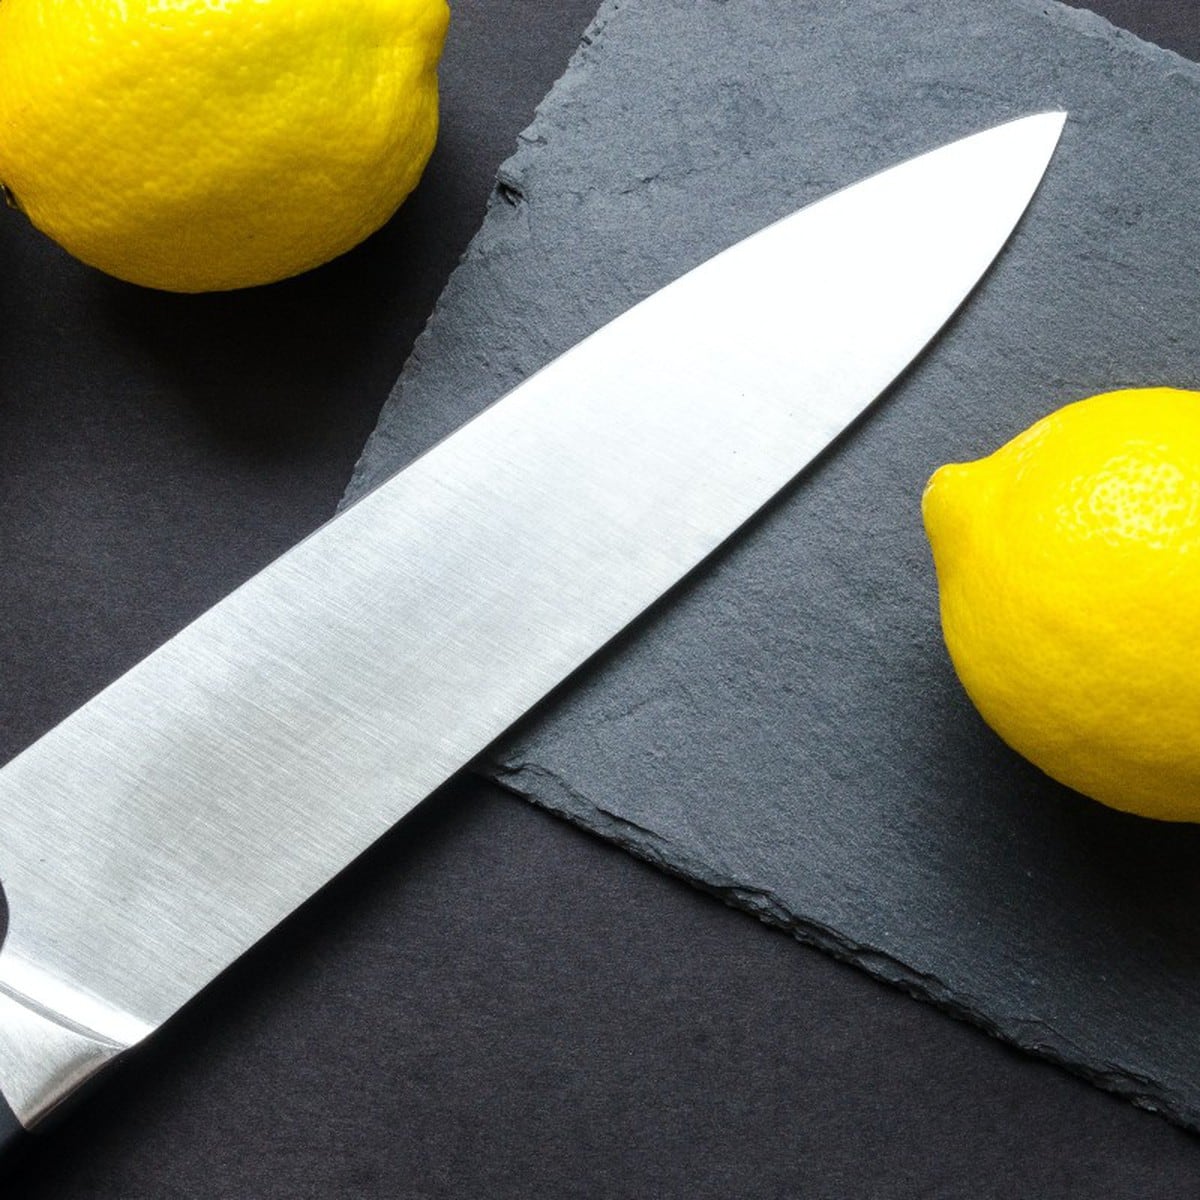 Como afilar cuchillos en casa de manera sencilla ¡3 métodos sencillos!